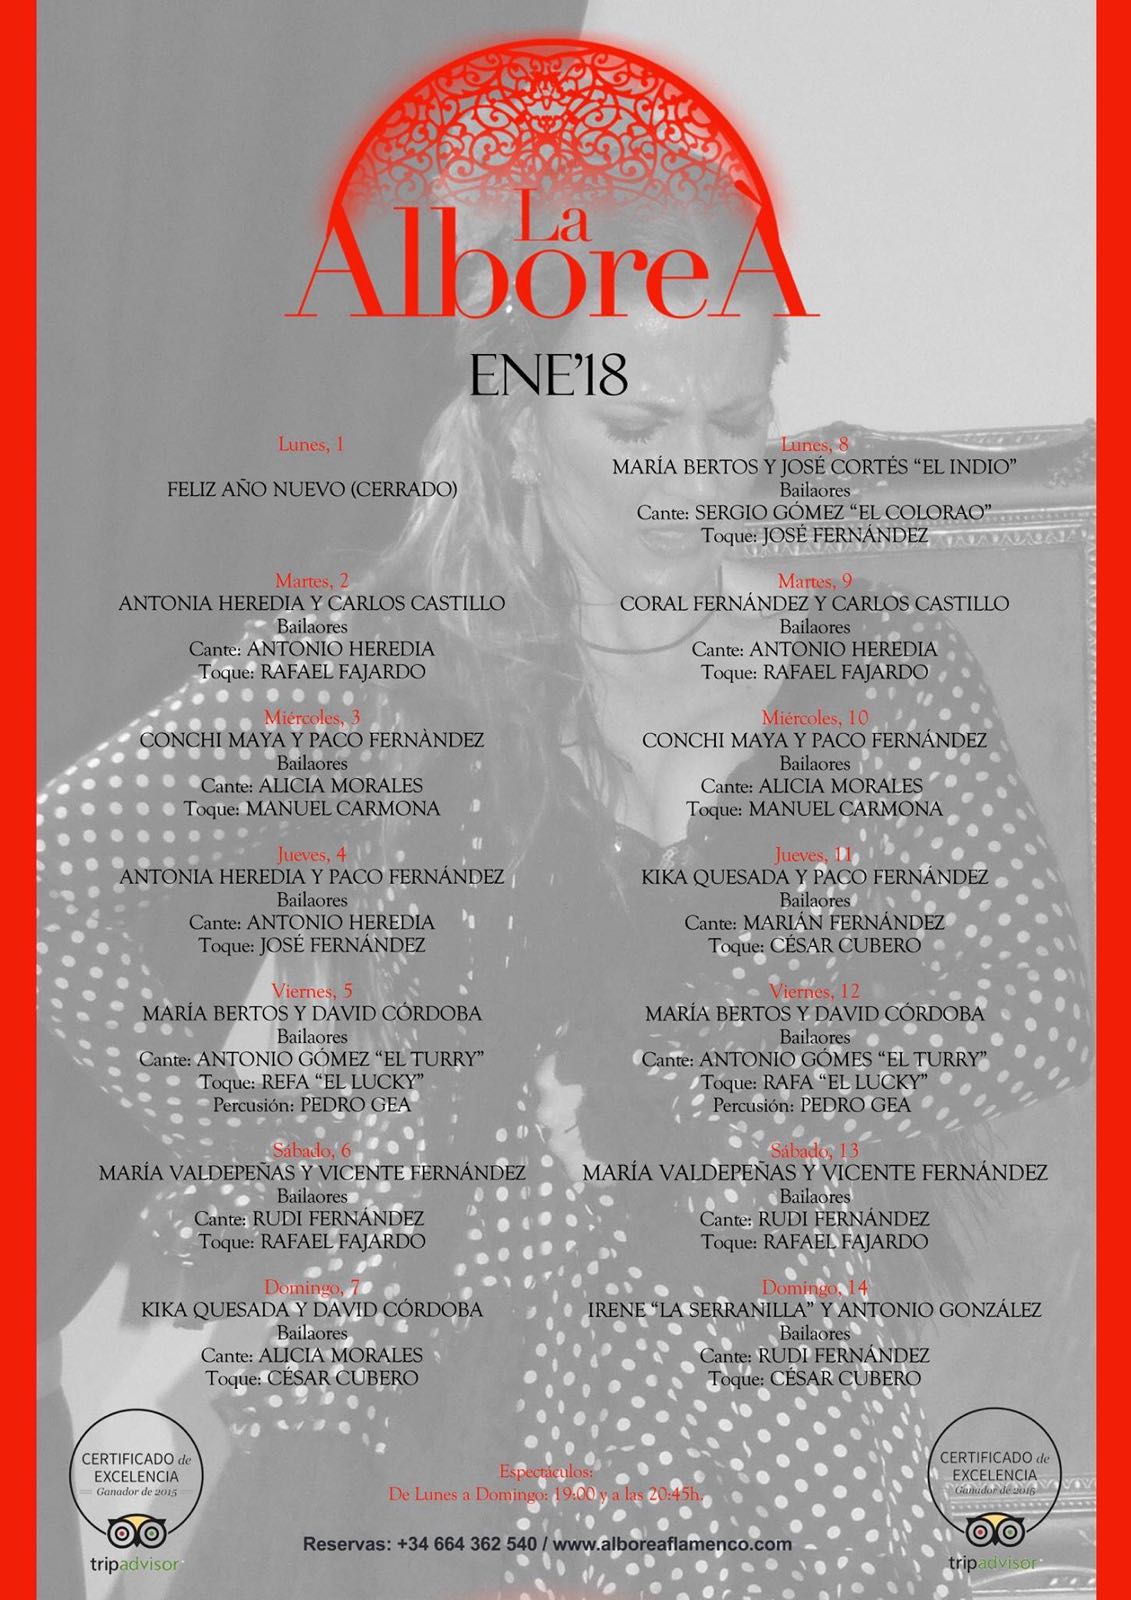 Flamenco en Granada Enero 2018 - Programación artistas